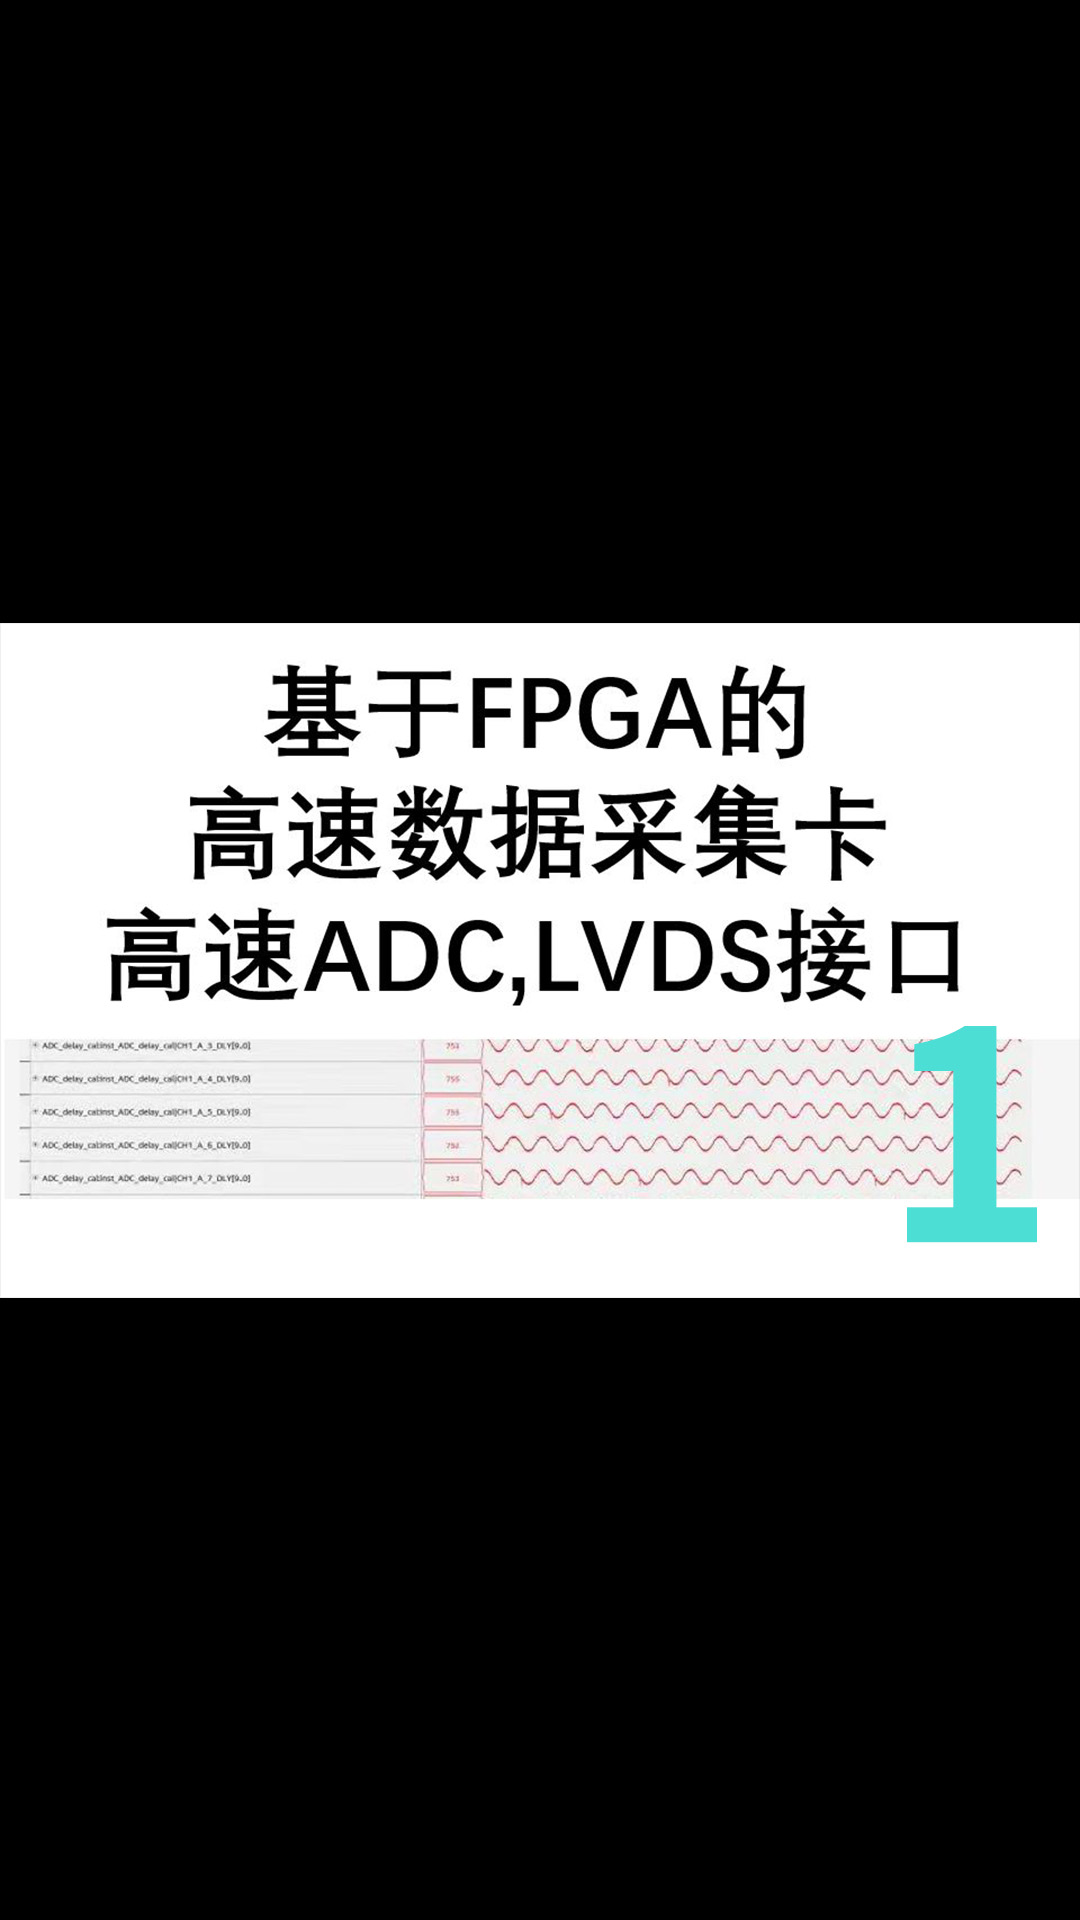 基于FPGA的高速数据采集卡,LVDS接口-1